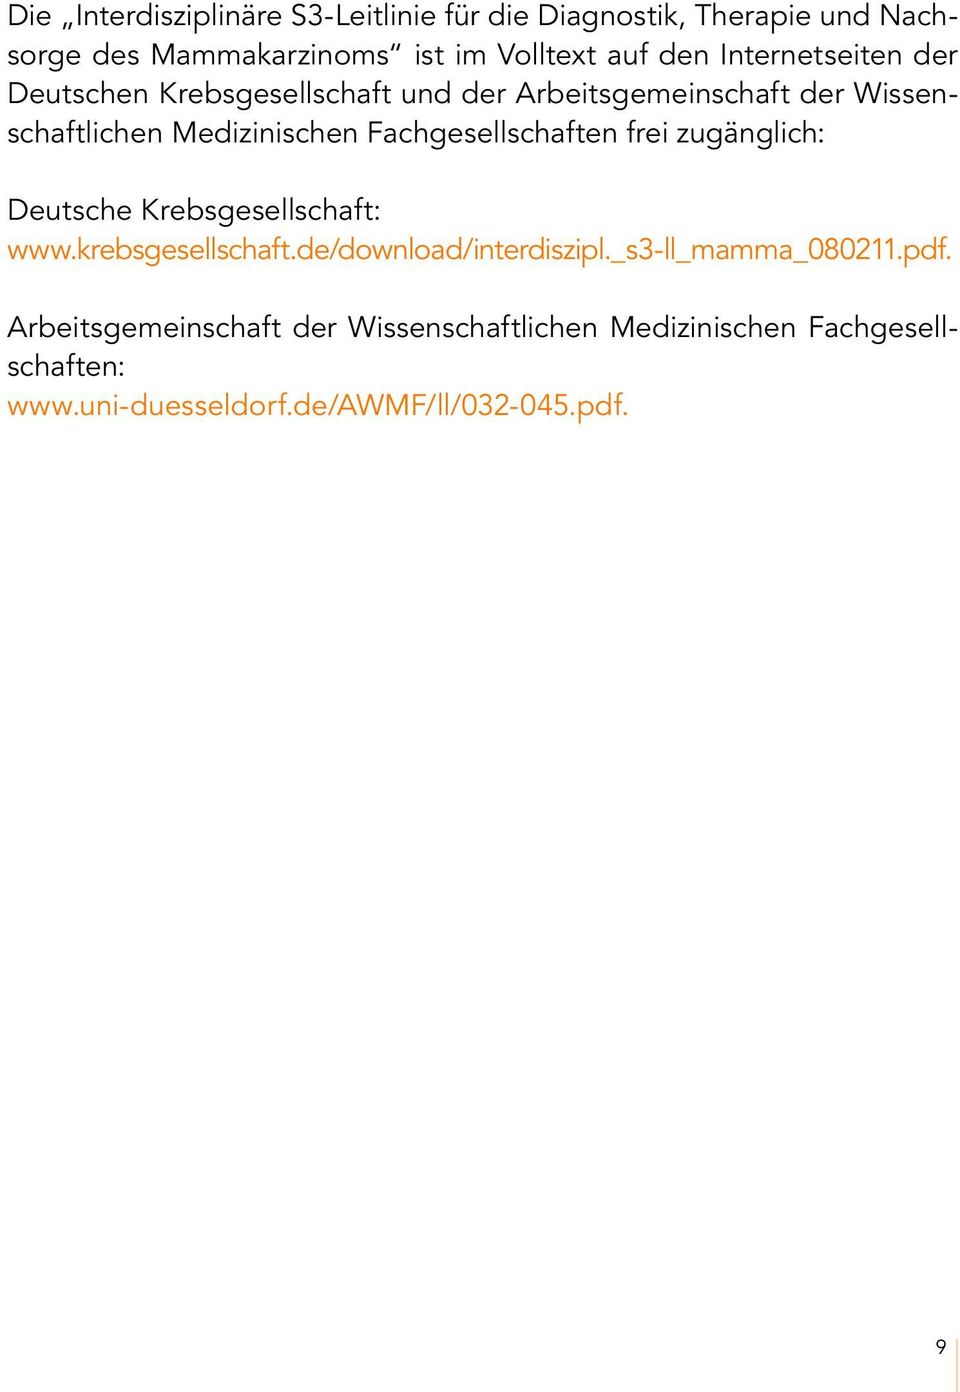 Fachgesellschaften frei zugänglich: Deutsche Krebsgesellschaft: www.krebsgesellschaft.de/download/interdiszipl.